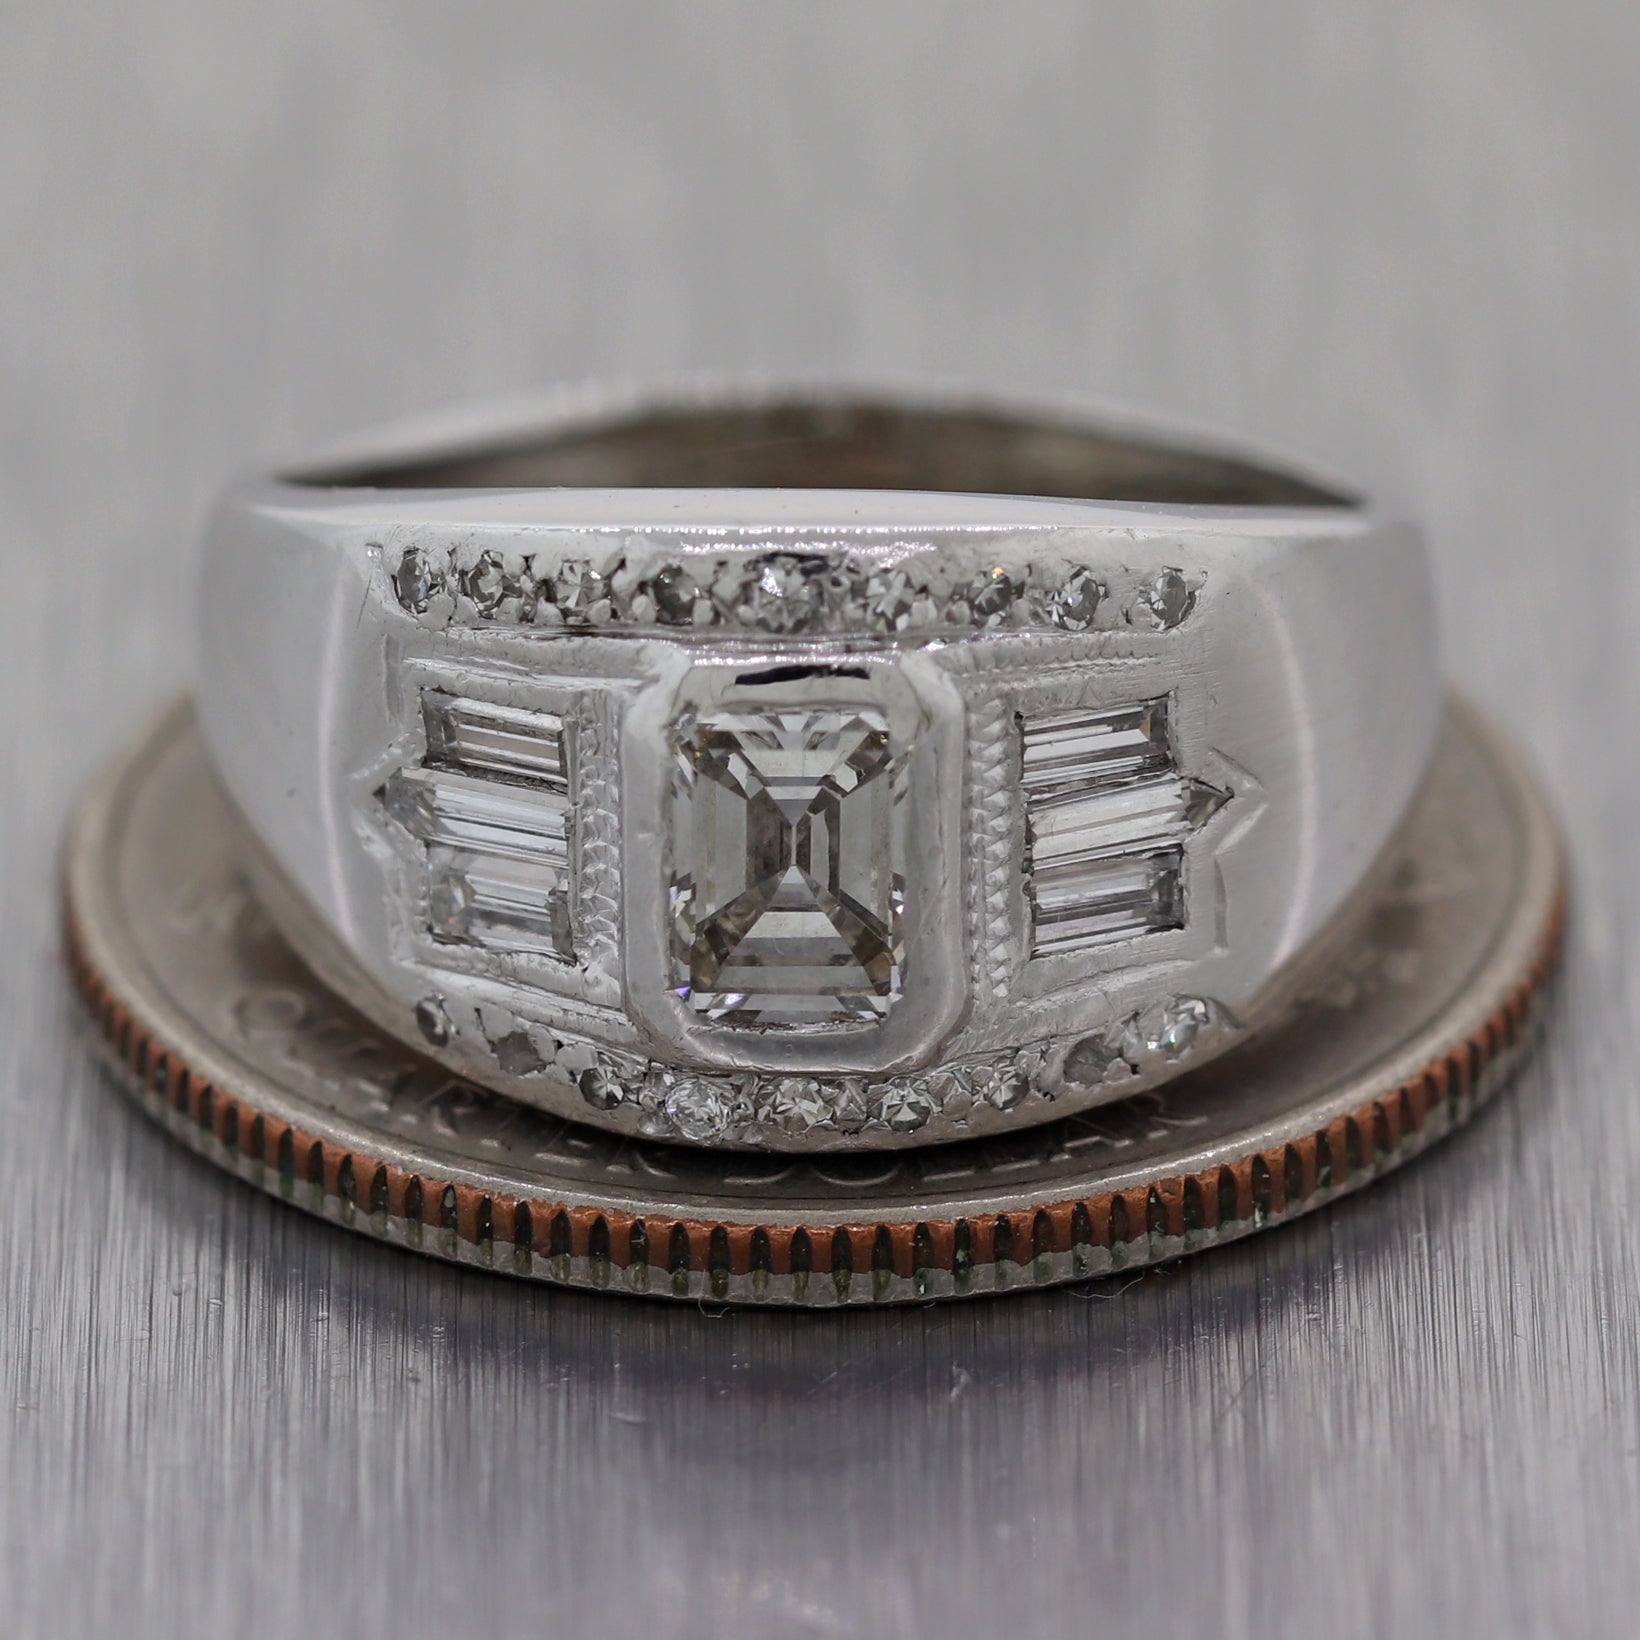 1930's Antique Art Deco Platinum 0.85ctw Baguette & Emerald Cut Diamond Ring